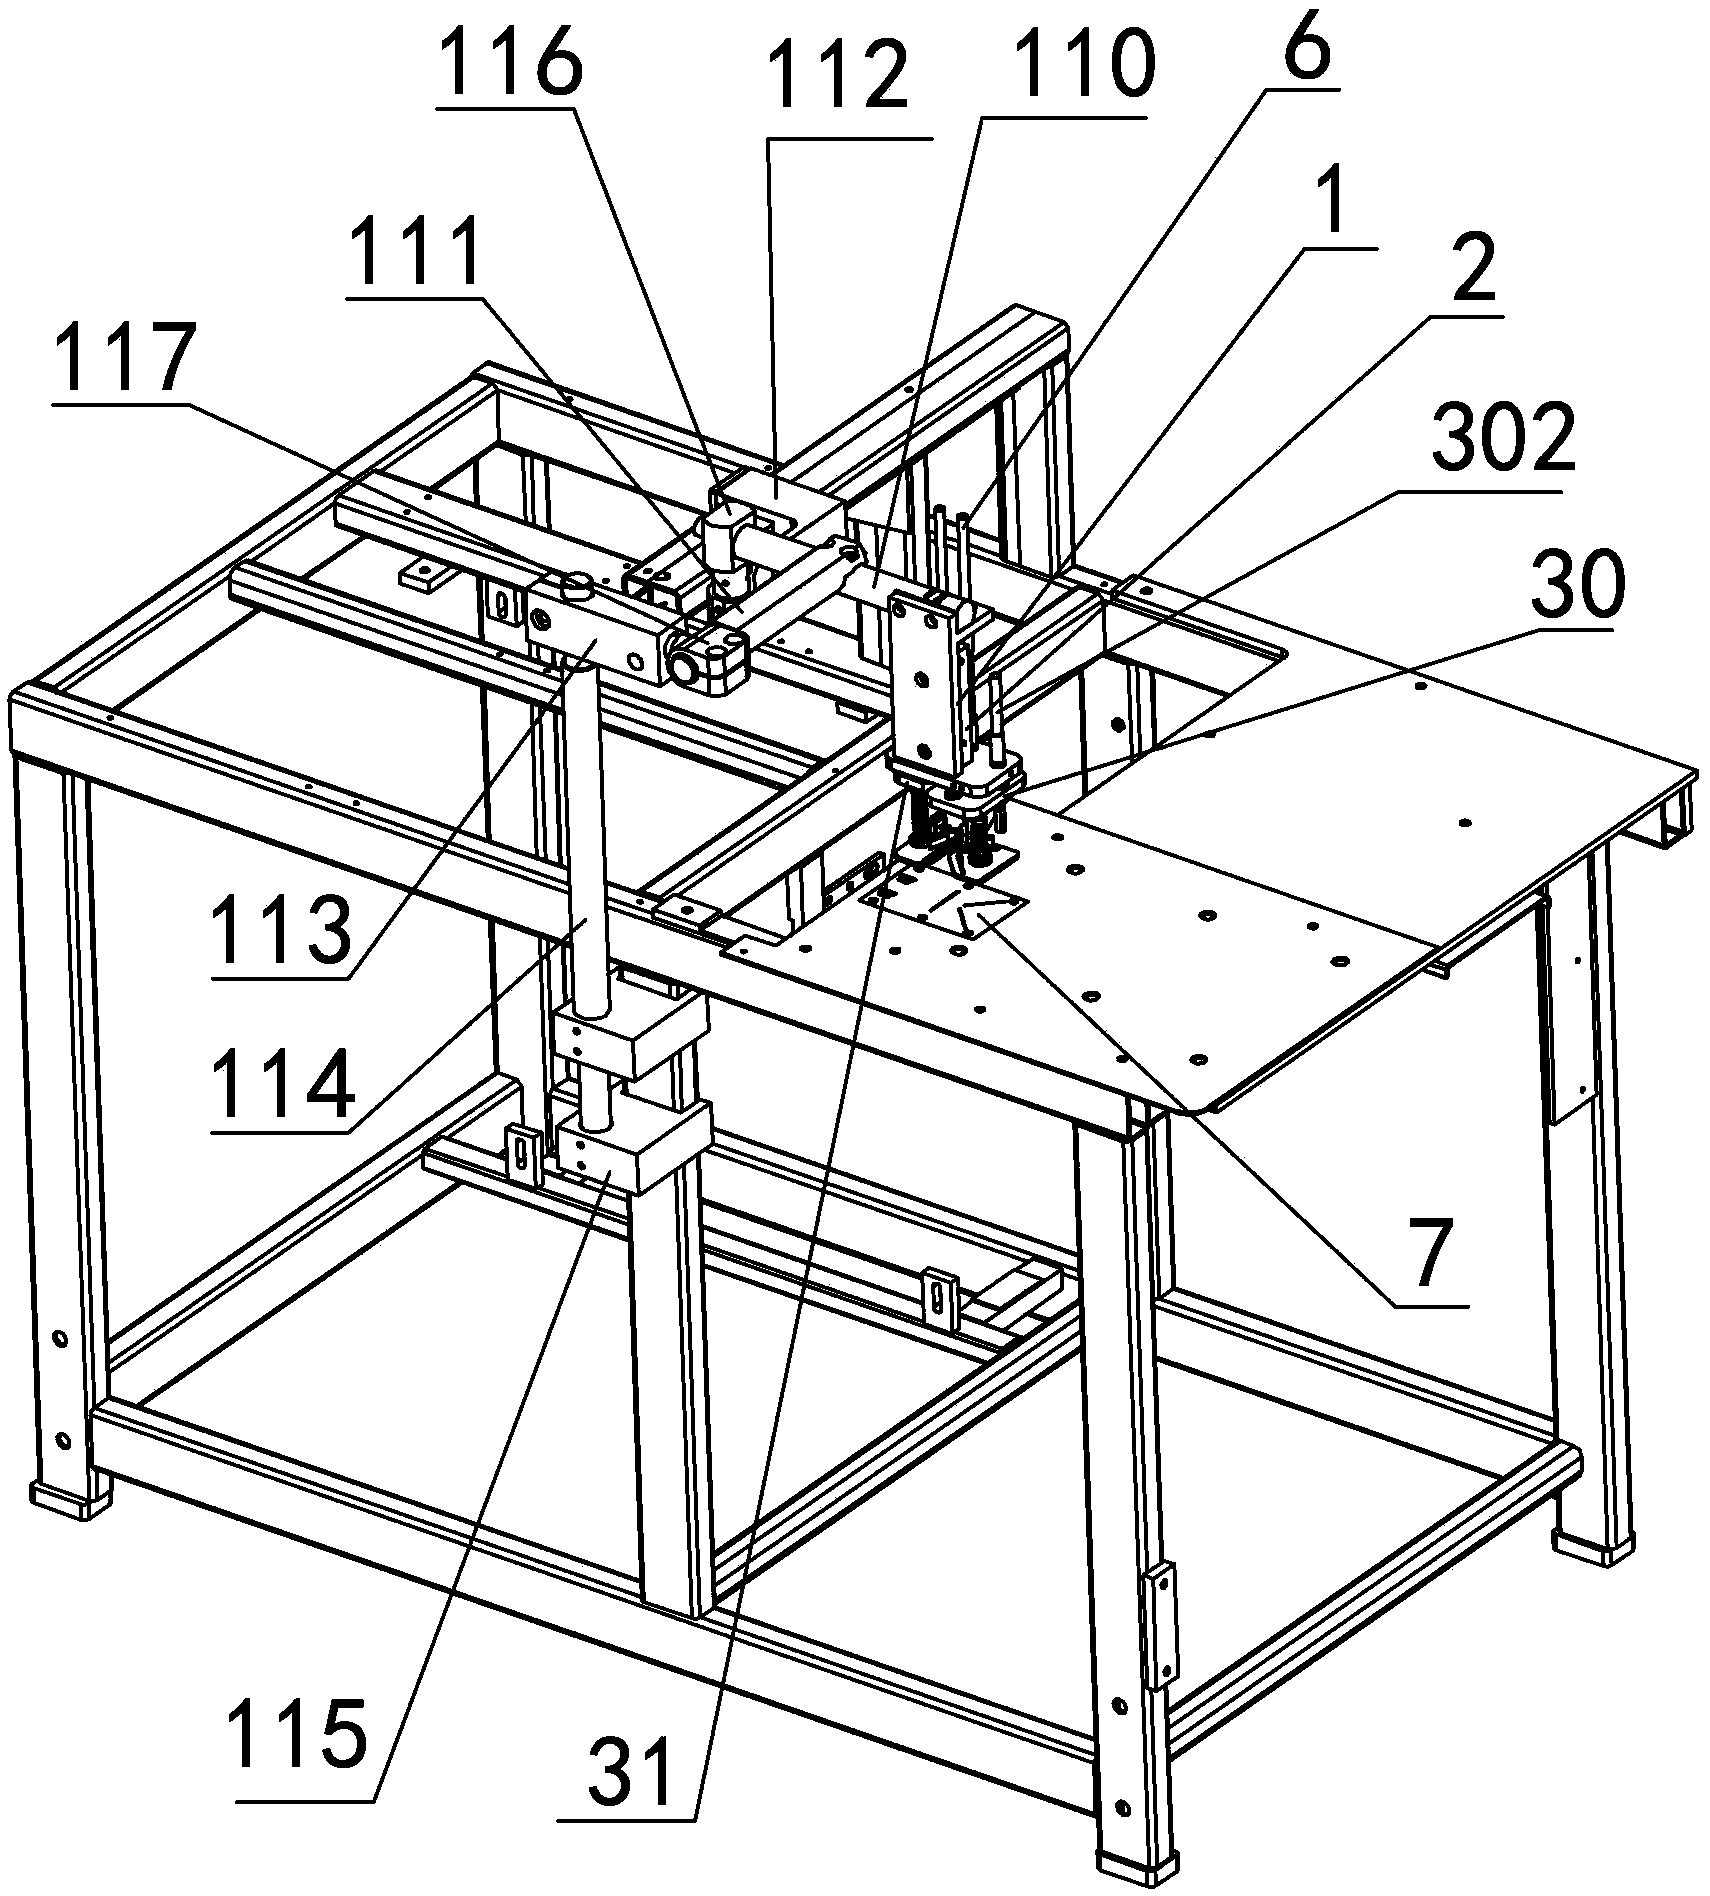 Sewing machine cutter device